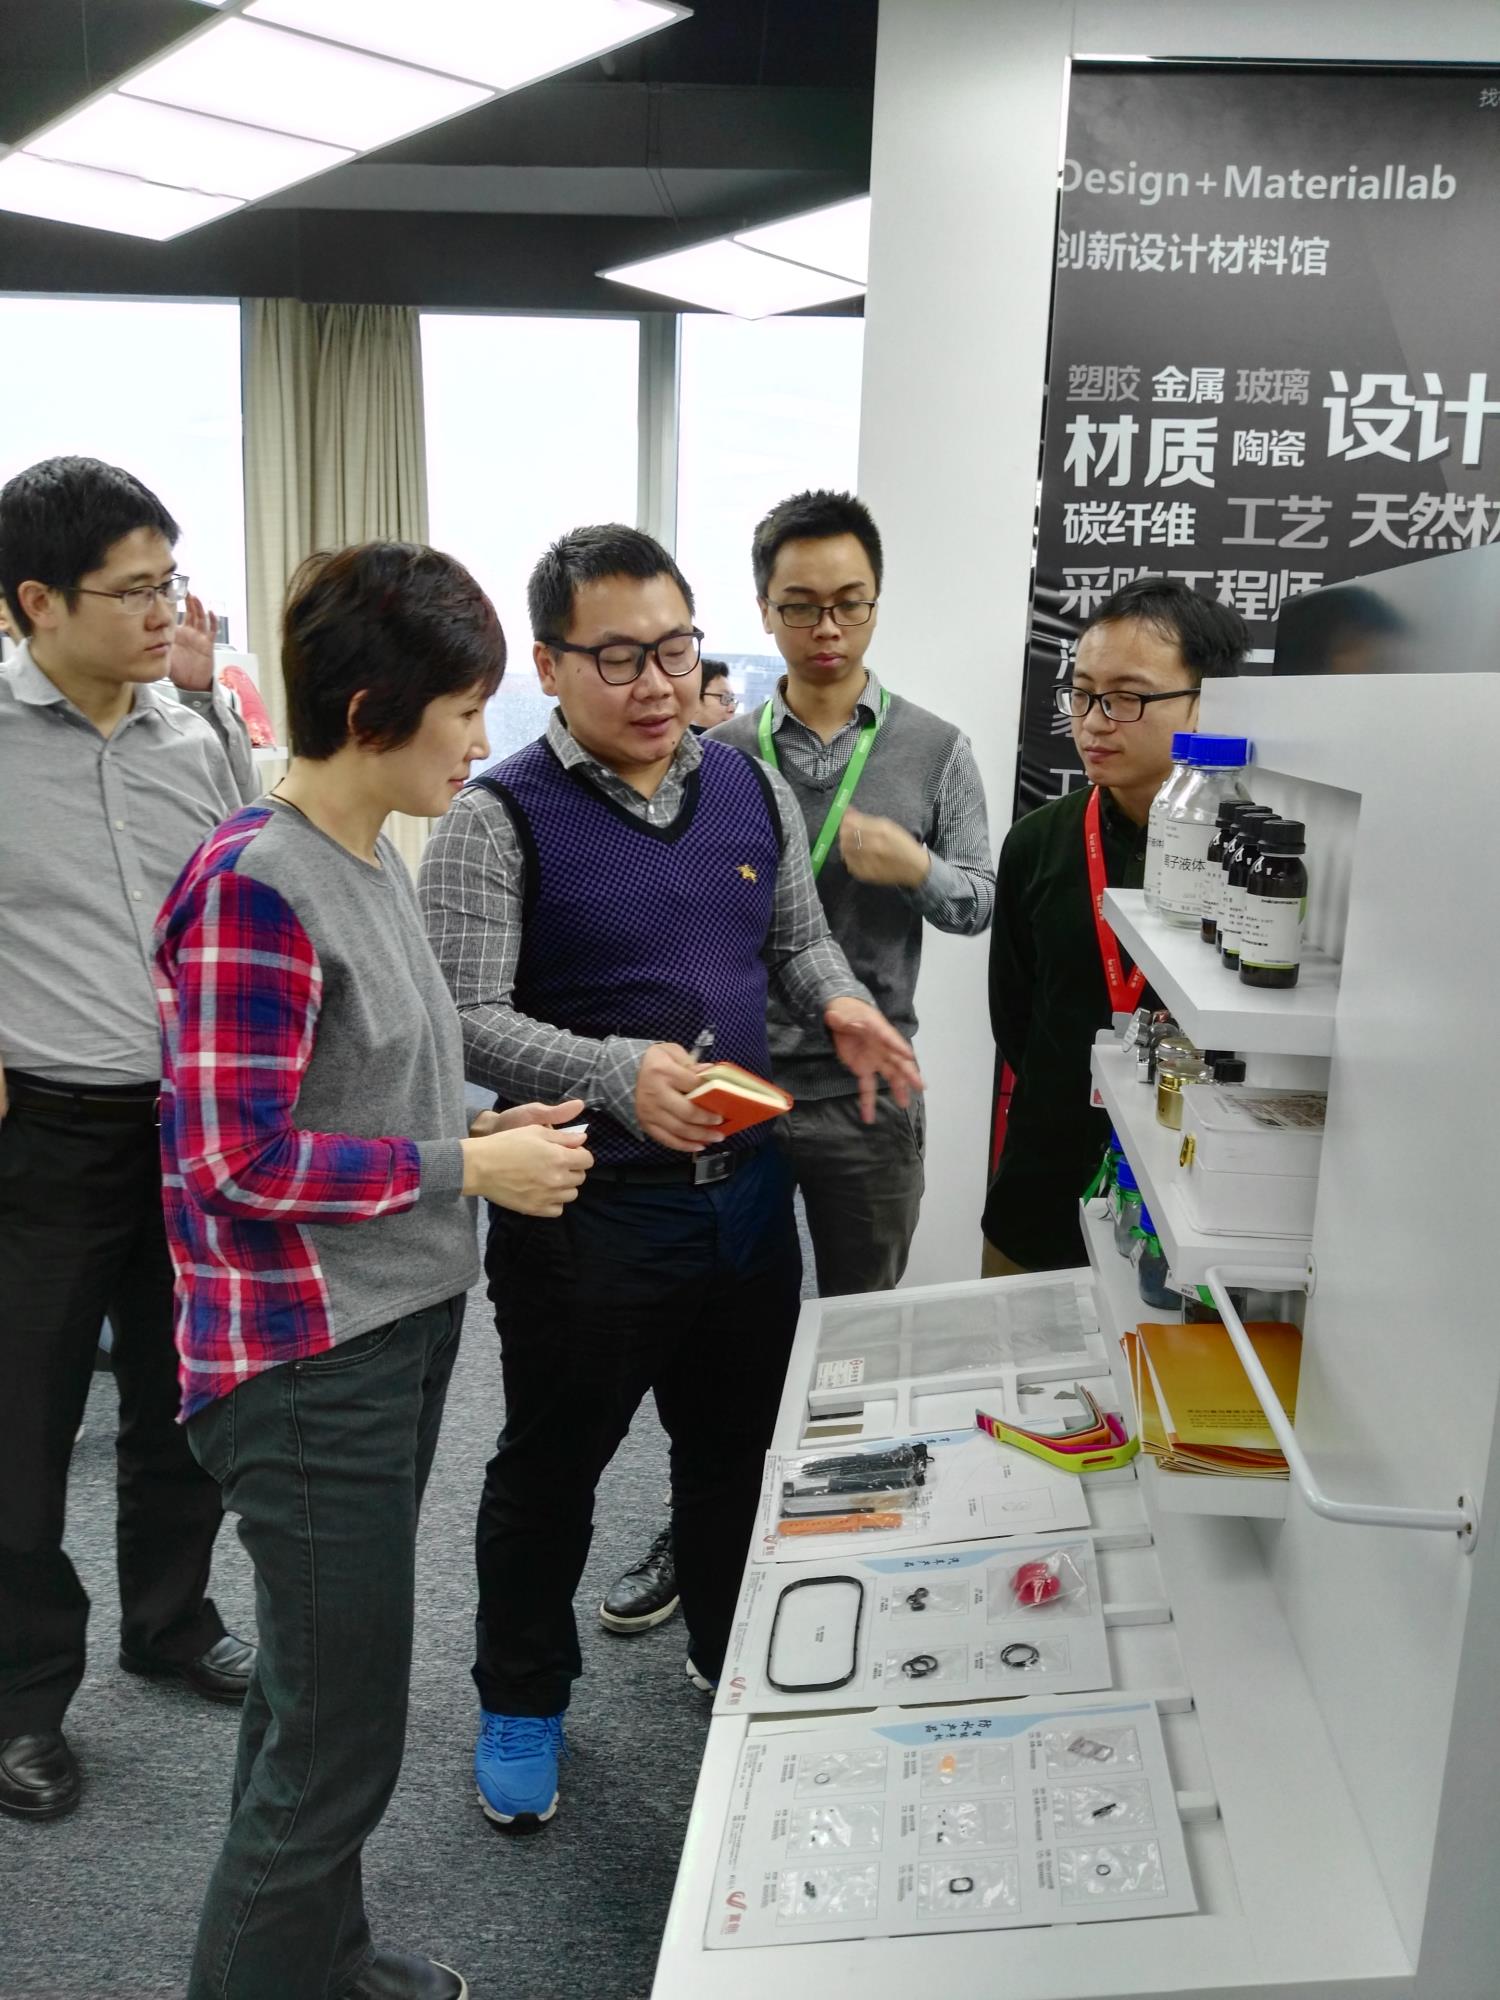 索尔维投资有限公司亚洲区总监叶晖参观创新材料馆